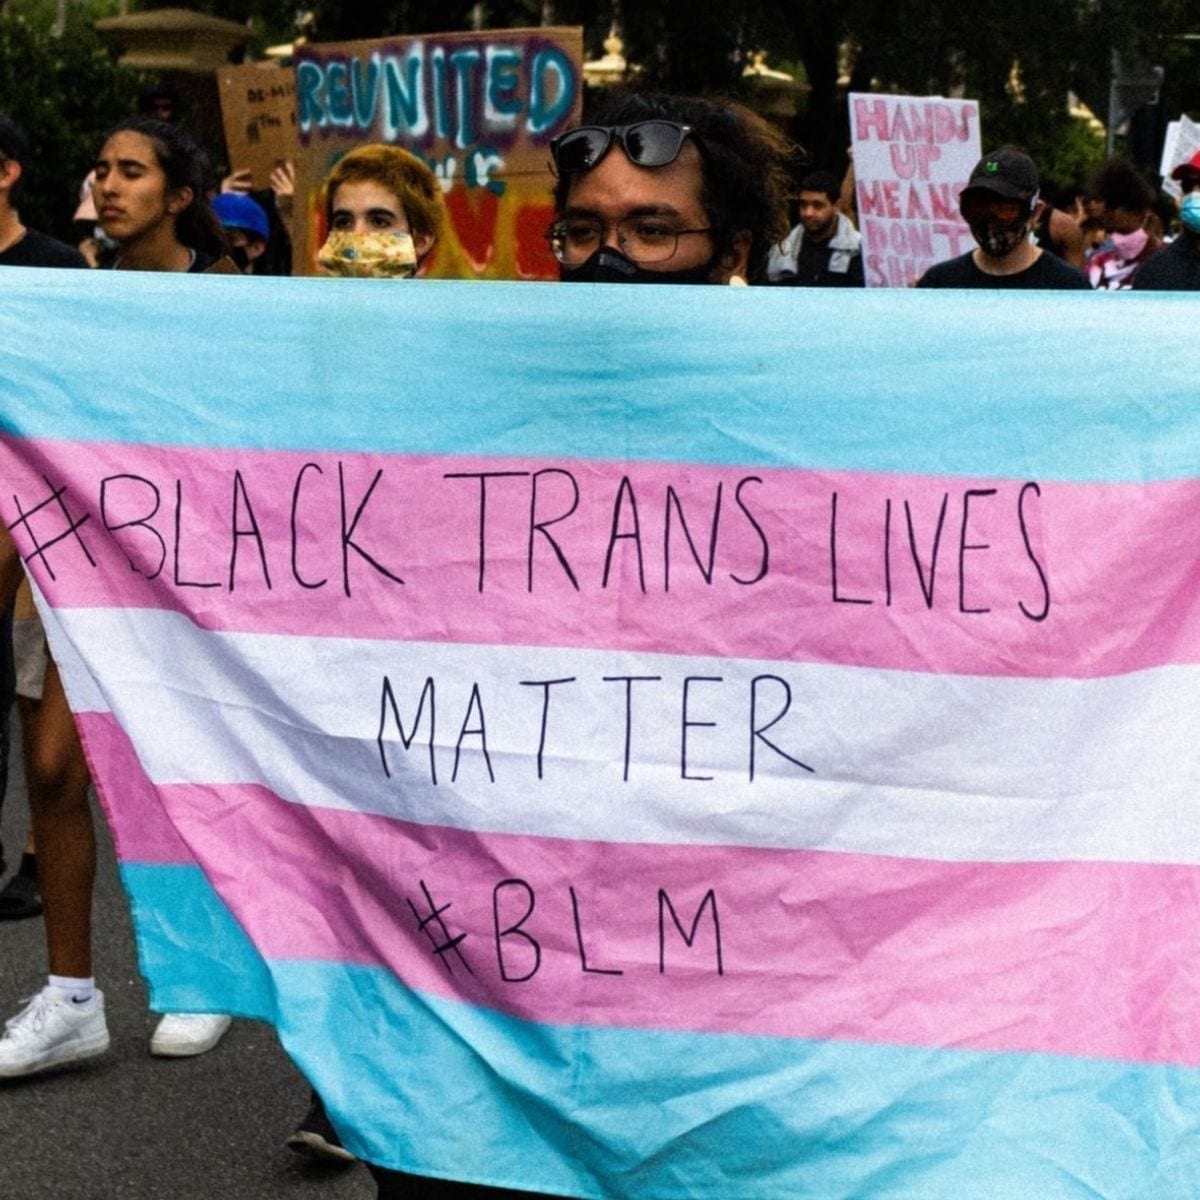 Black Trans Lives matter on a transgender flag